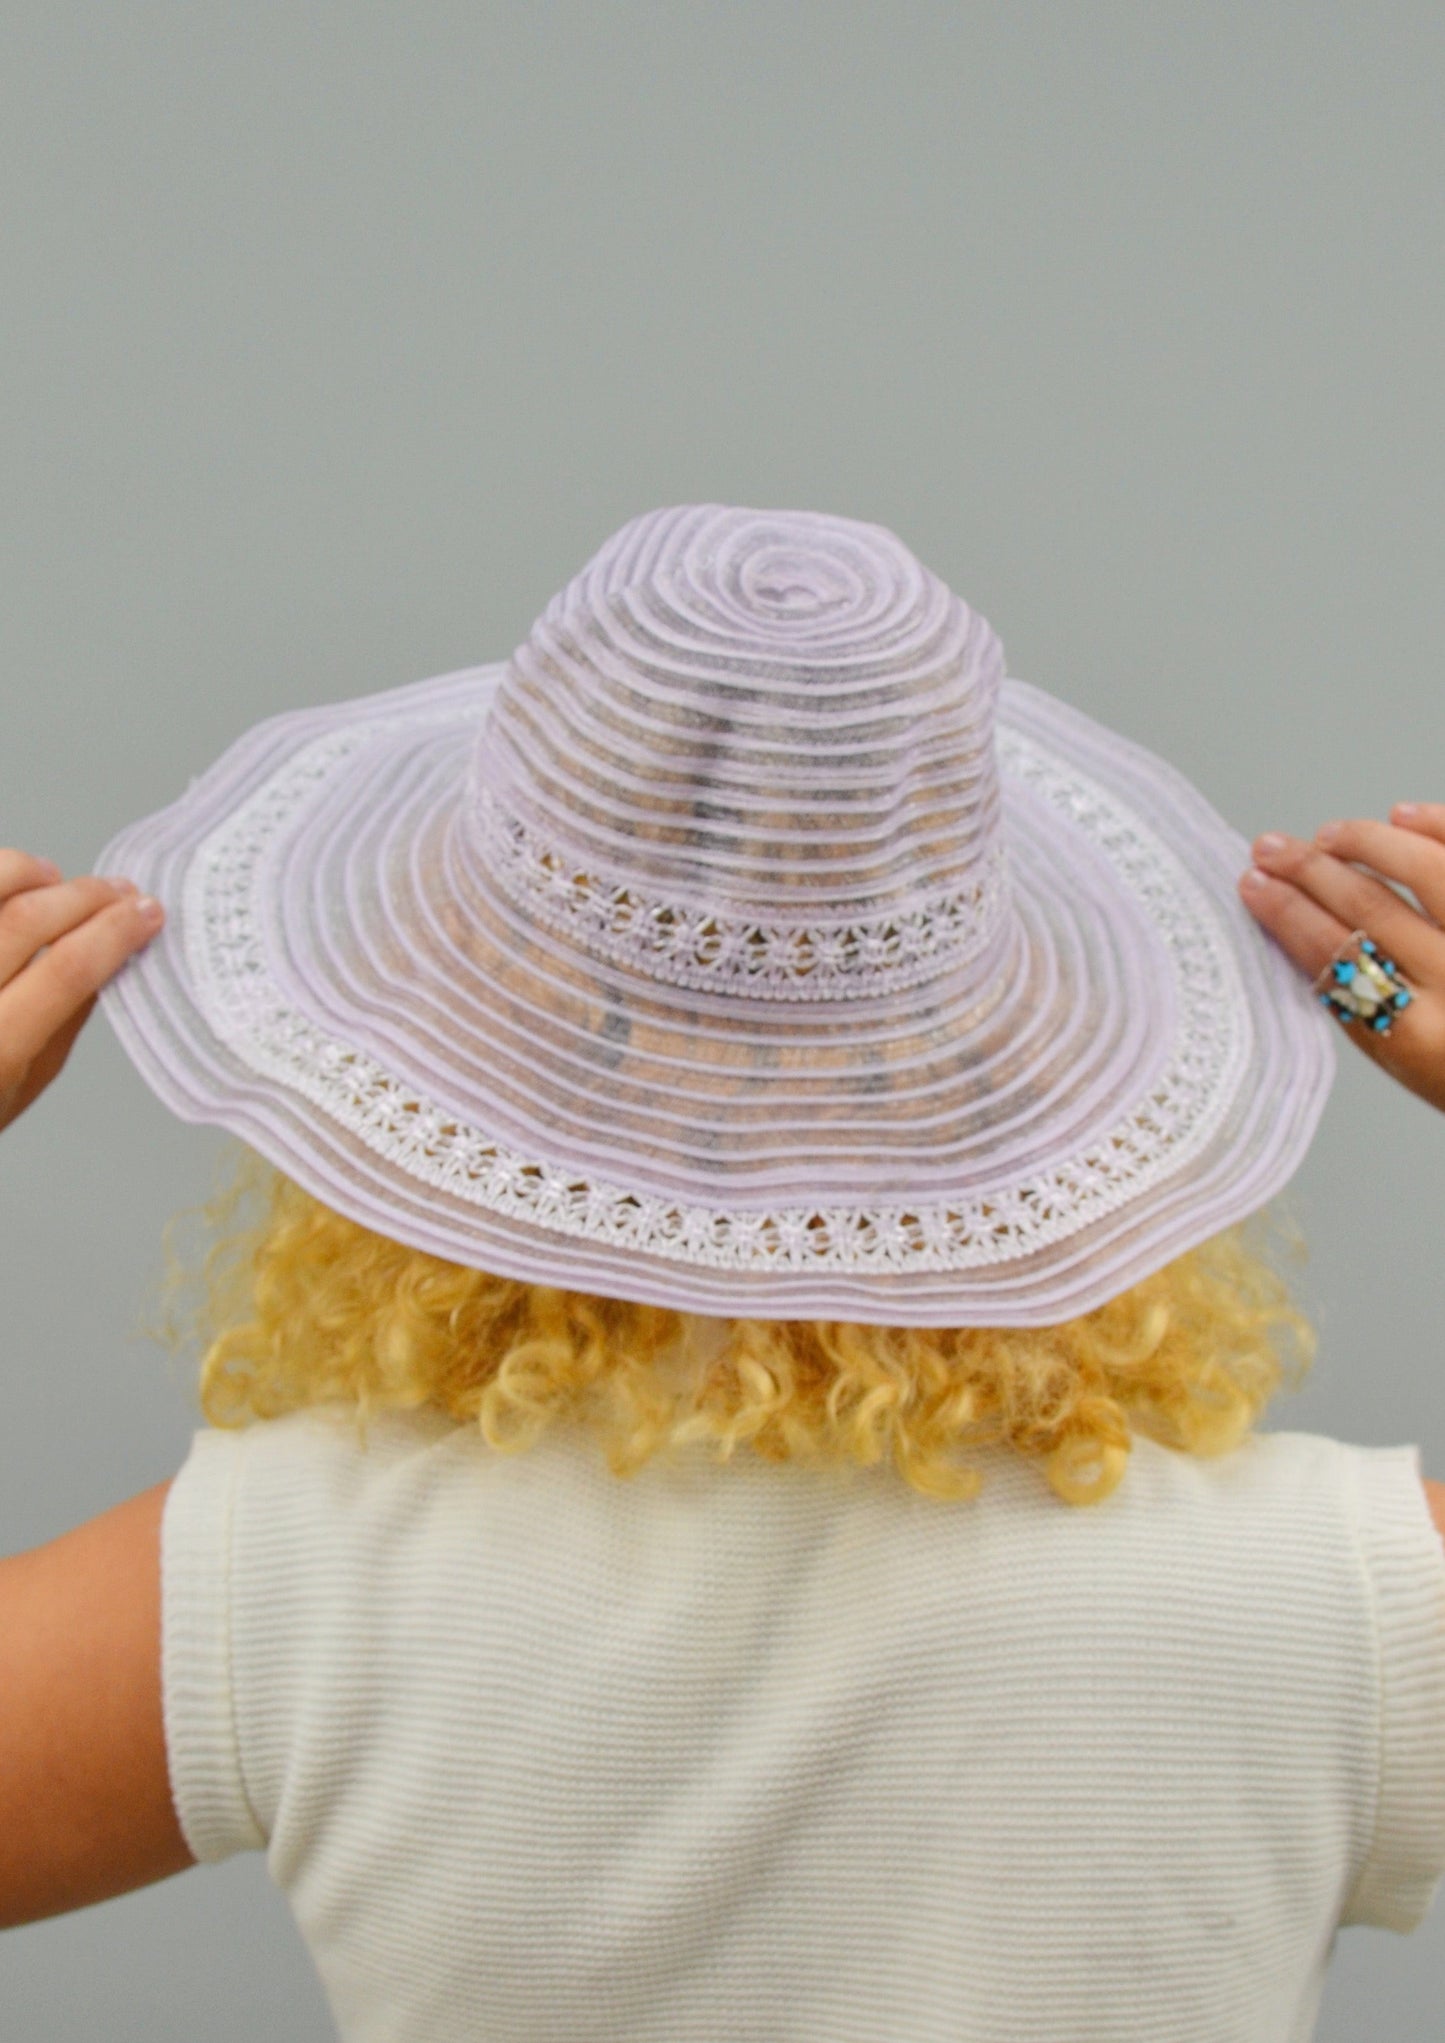 The Ava Lavender Sheer Hat, Vintage 1970's Hat